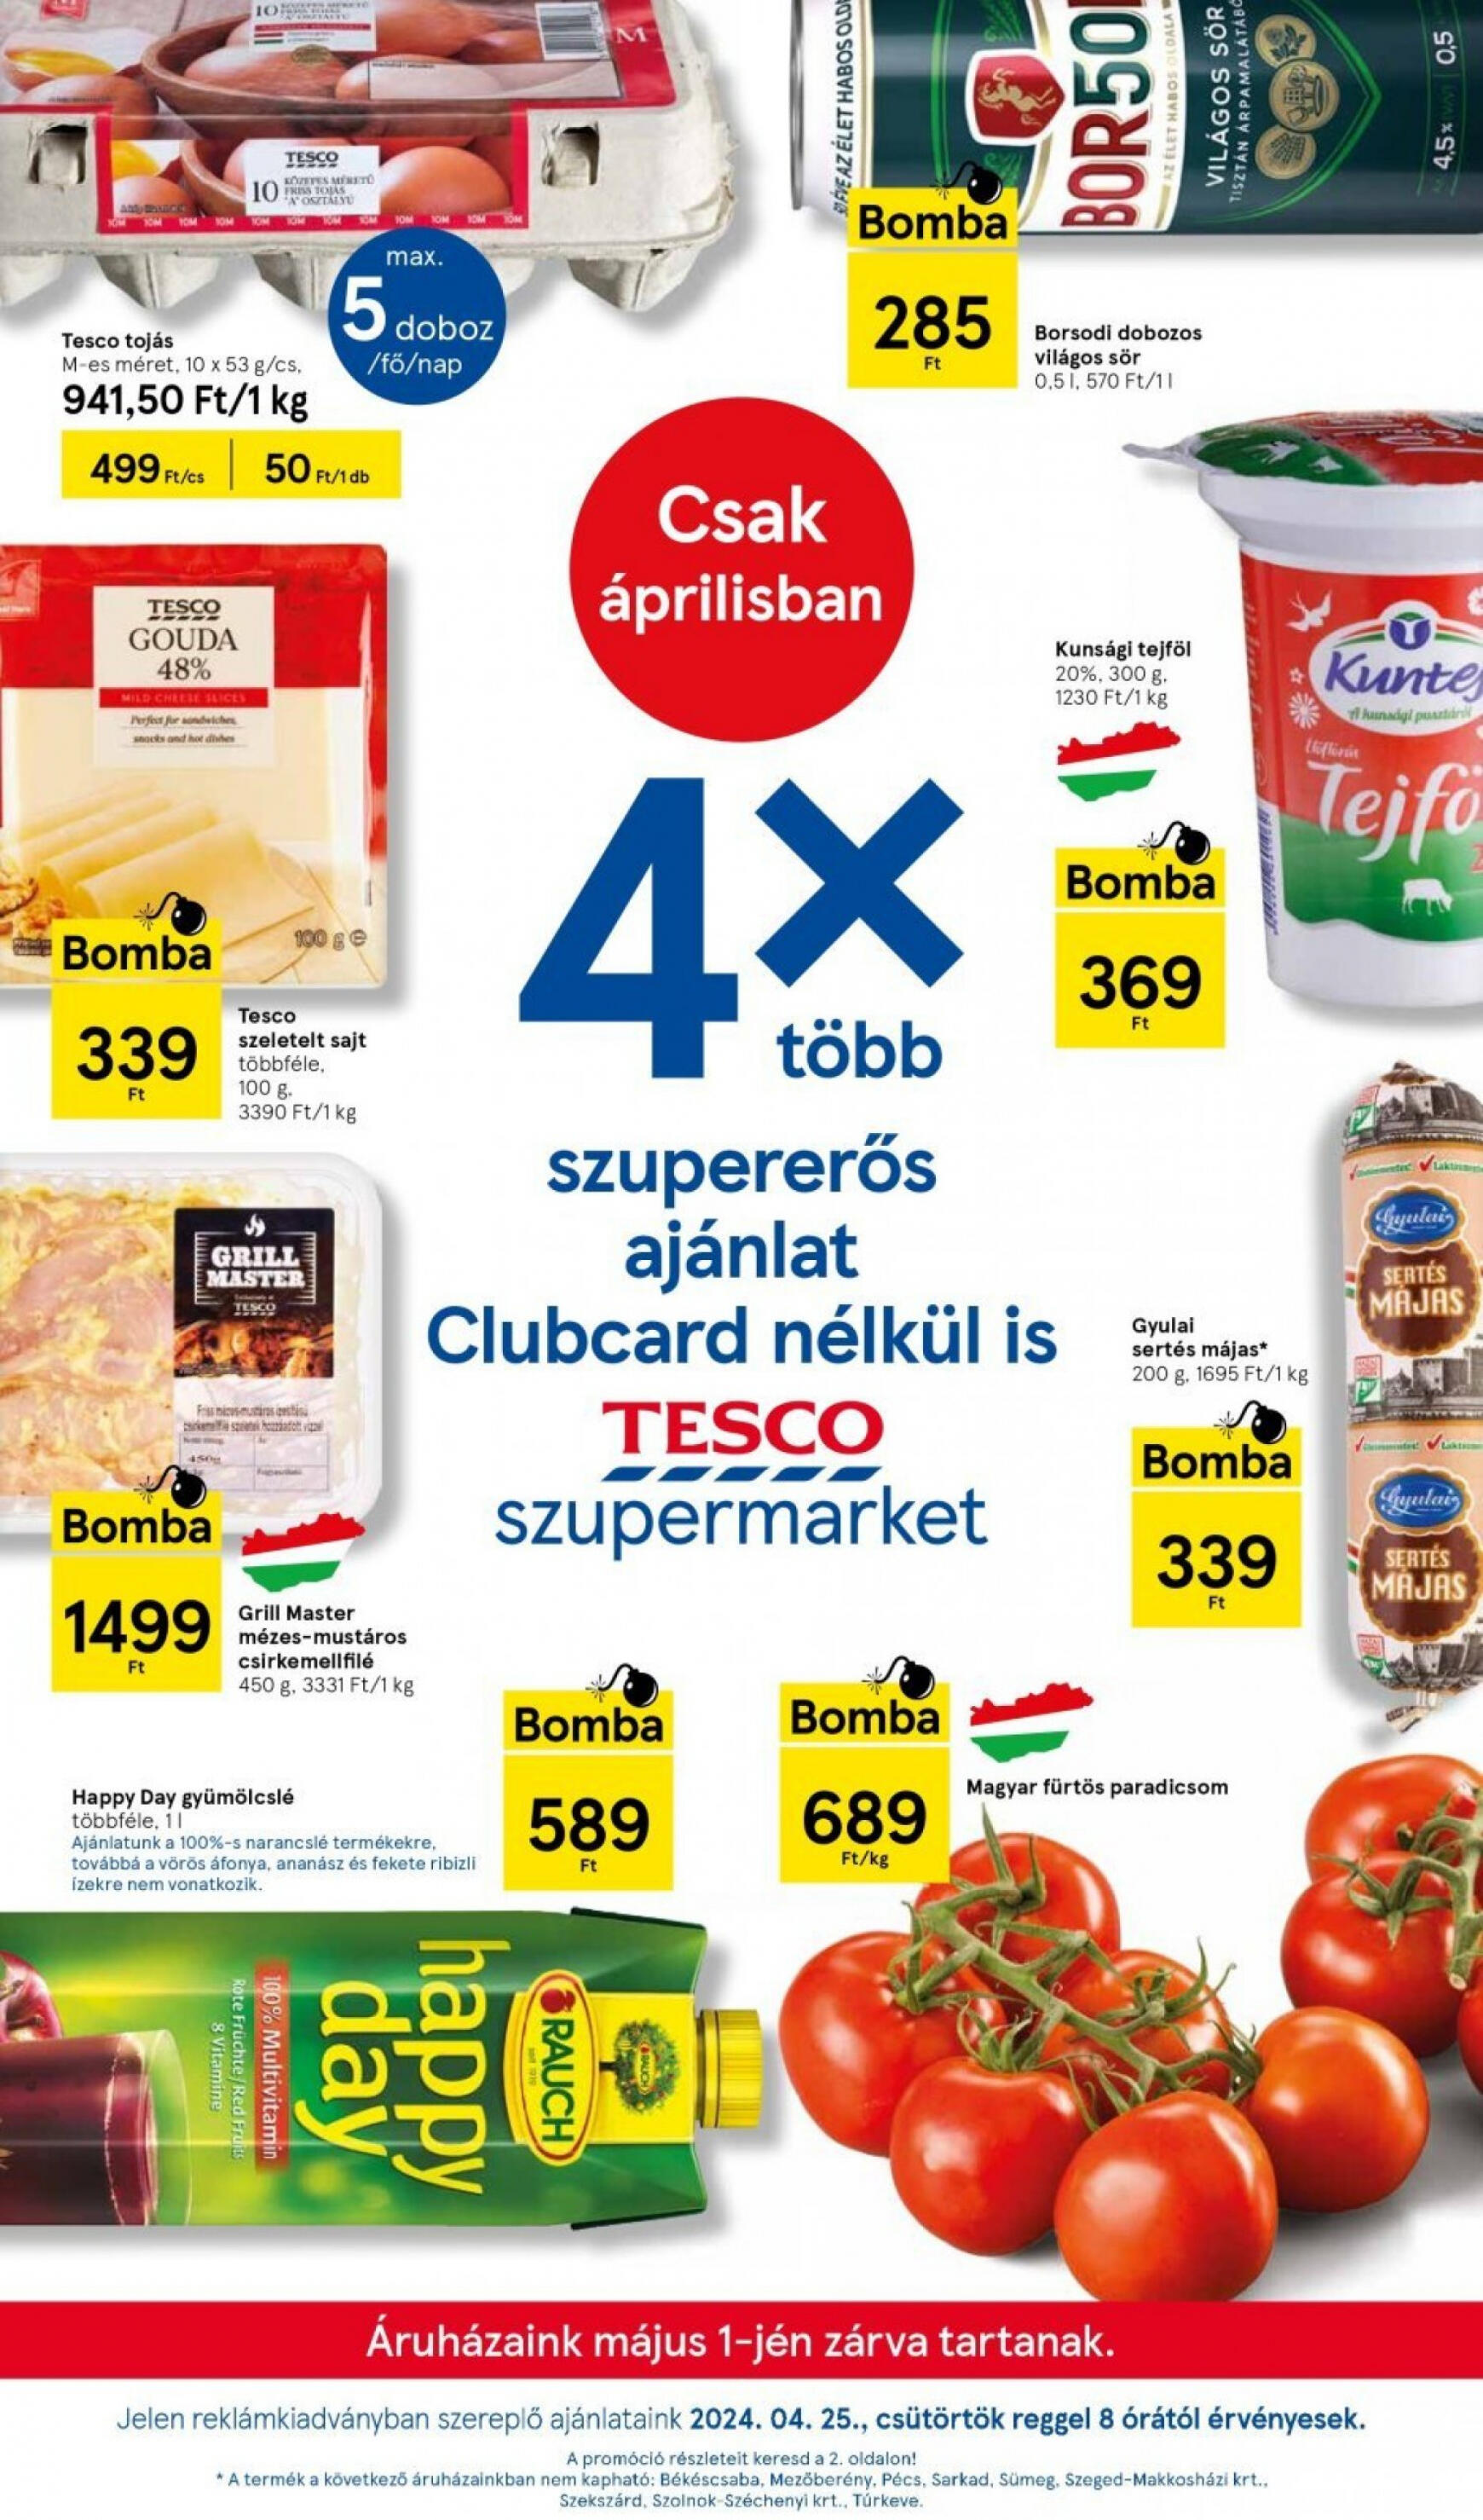 tesco - Aktuális újság Tesco szupermarket 04.25. - 05.01.